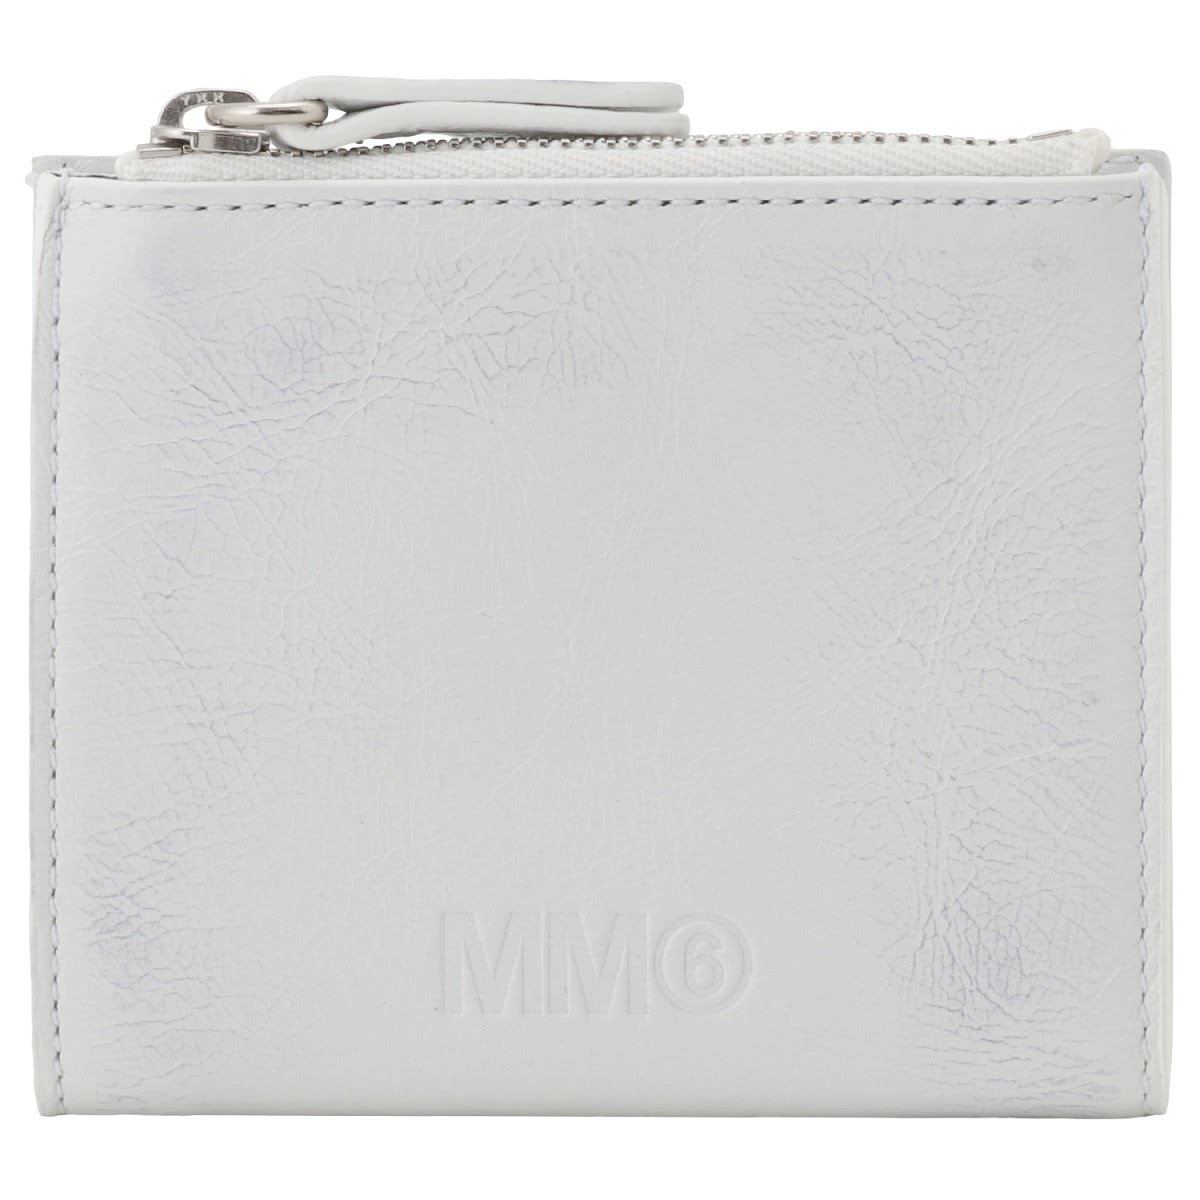 エムエムシックス MM6 ミニ財布 二つ折り財布 ホワイト 新品未使用品